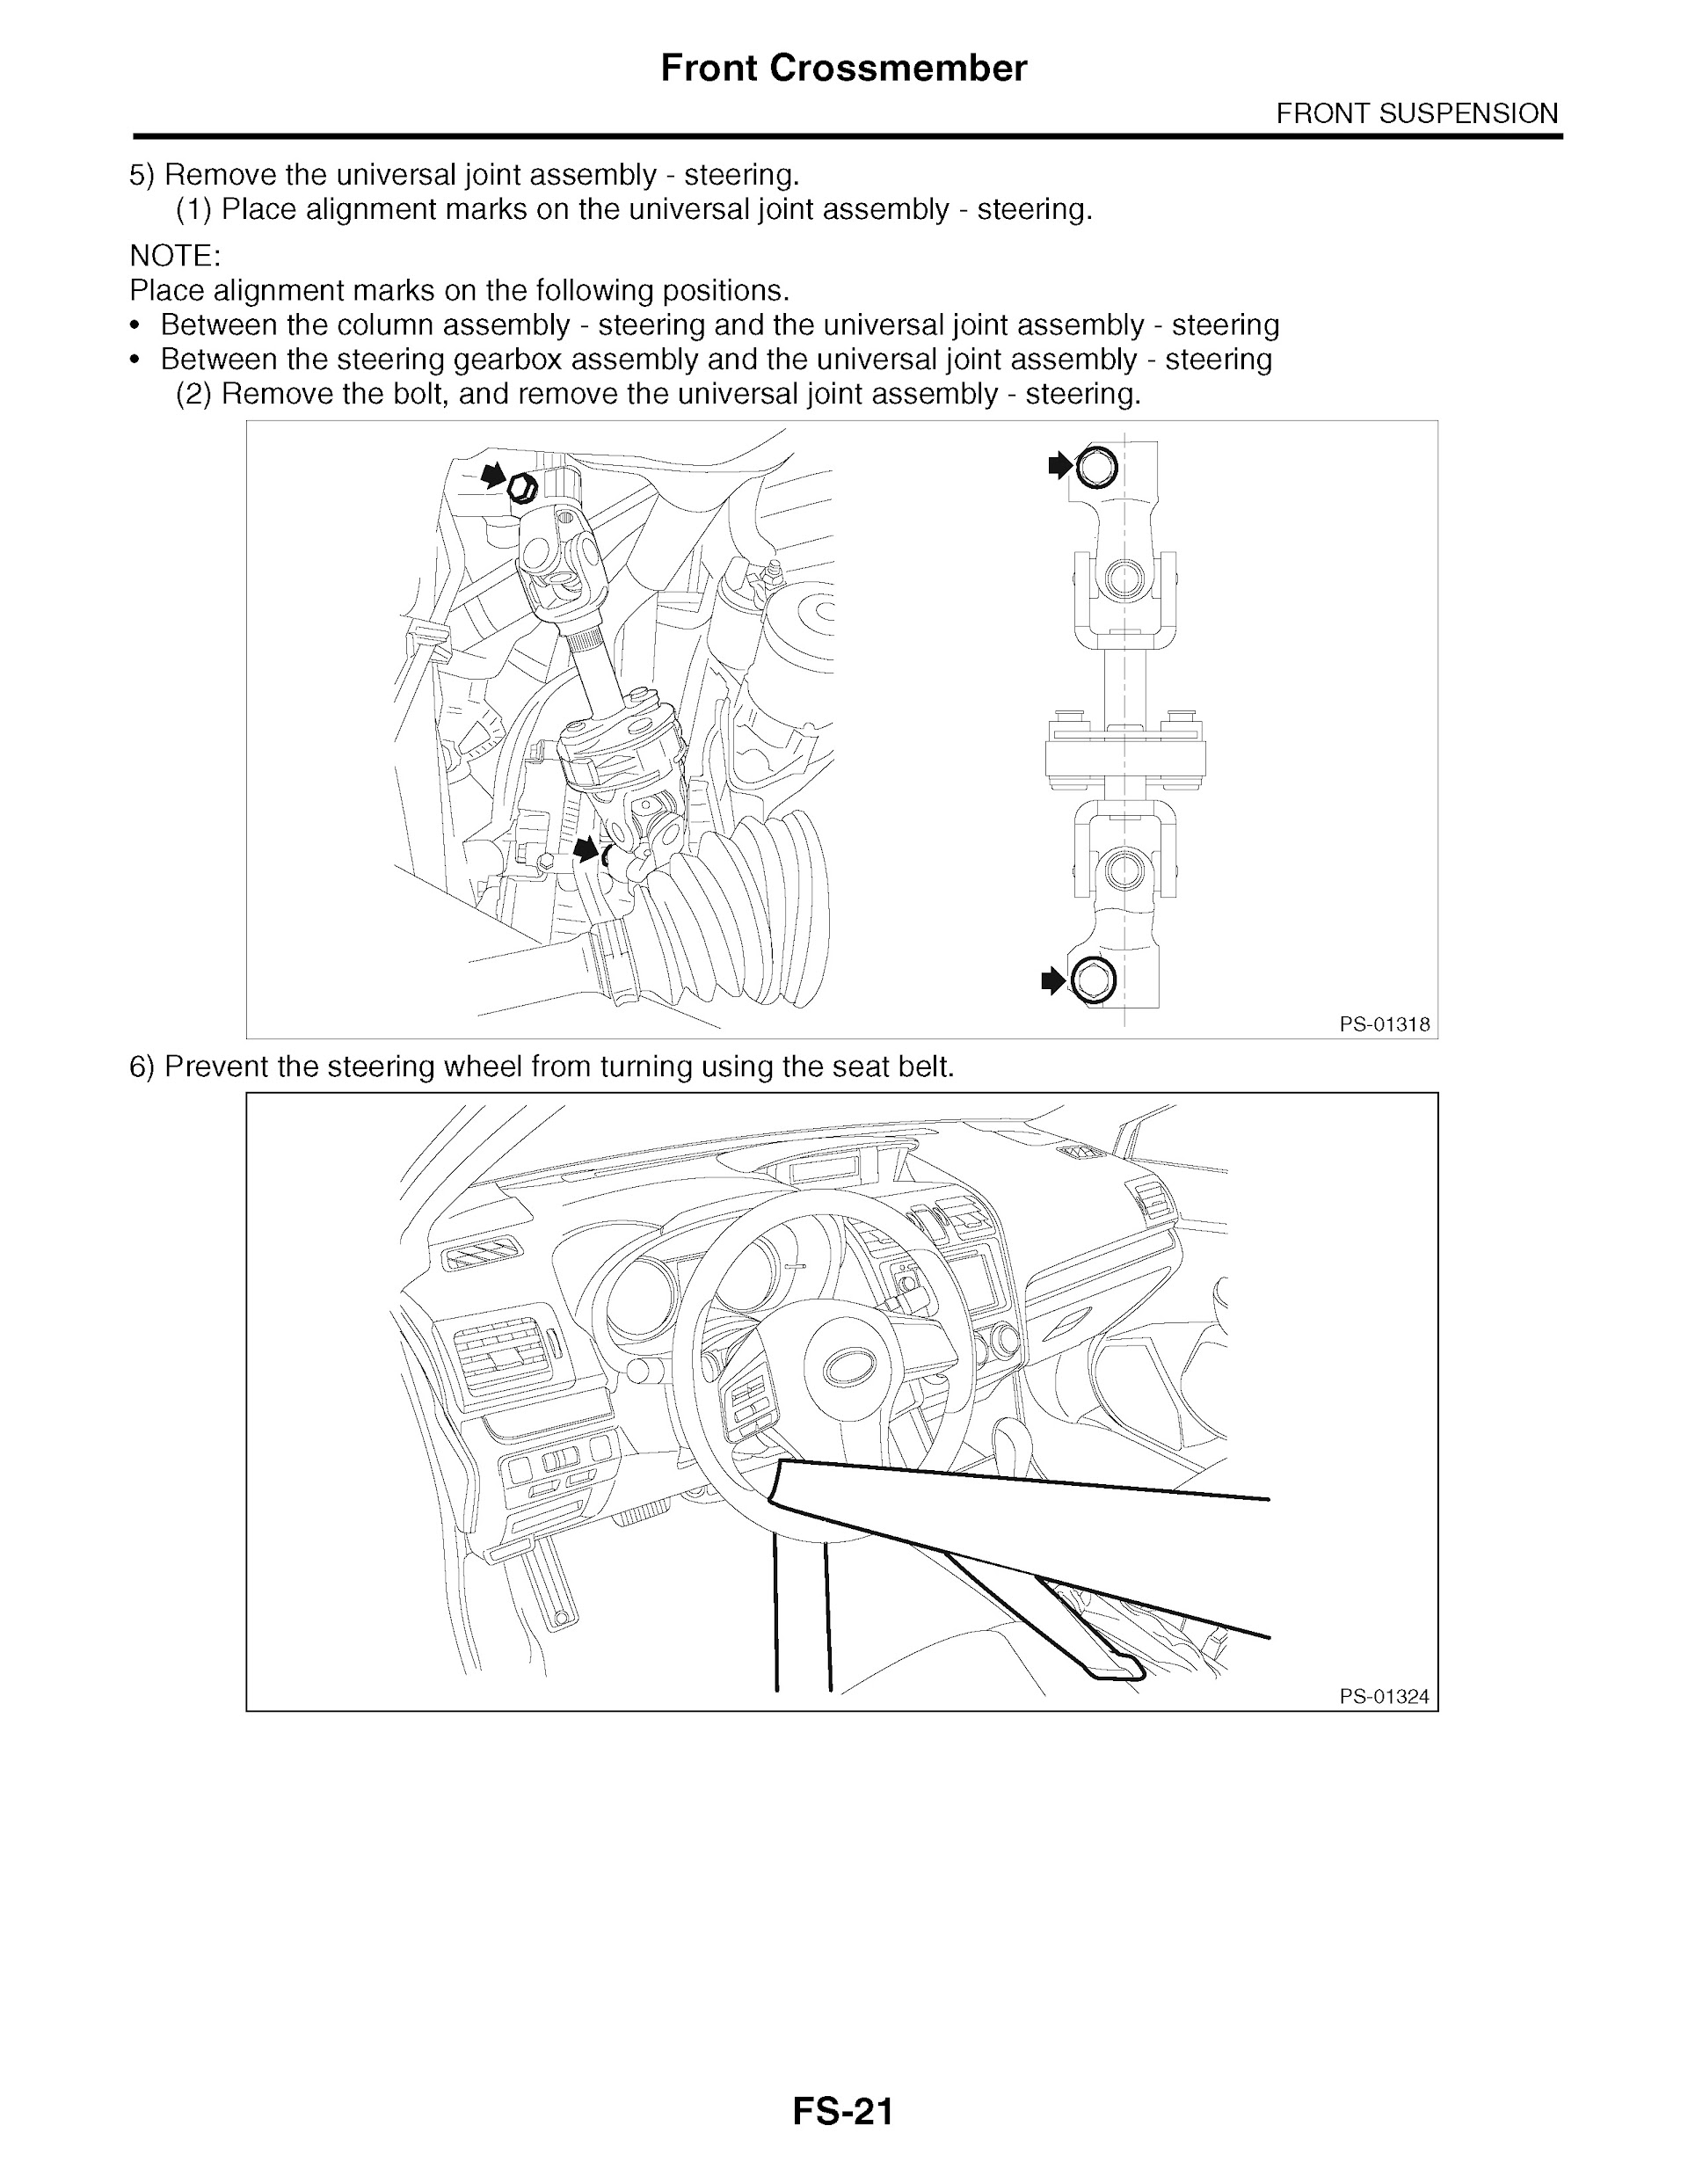 2013 Subaru Impreza &Amp; Xv Crosstrek Repair Manual, Front Crossmember